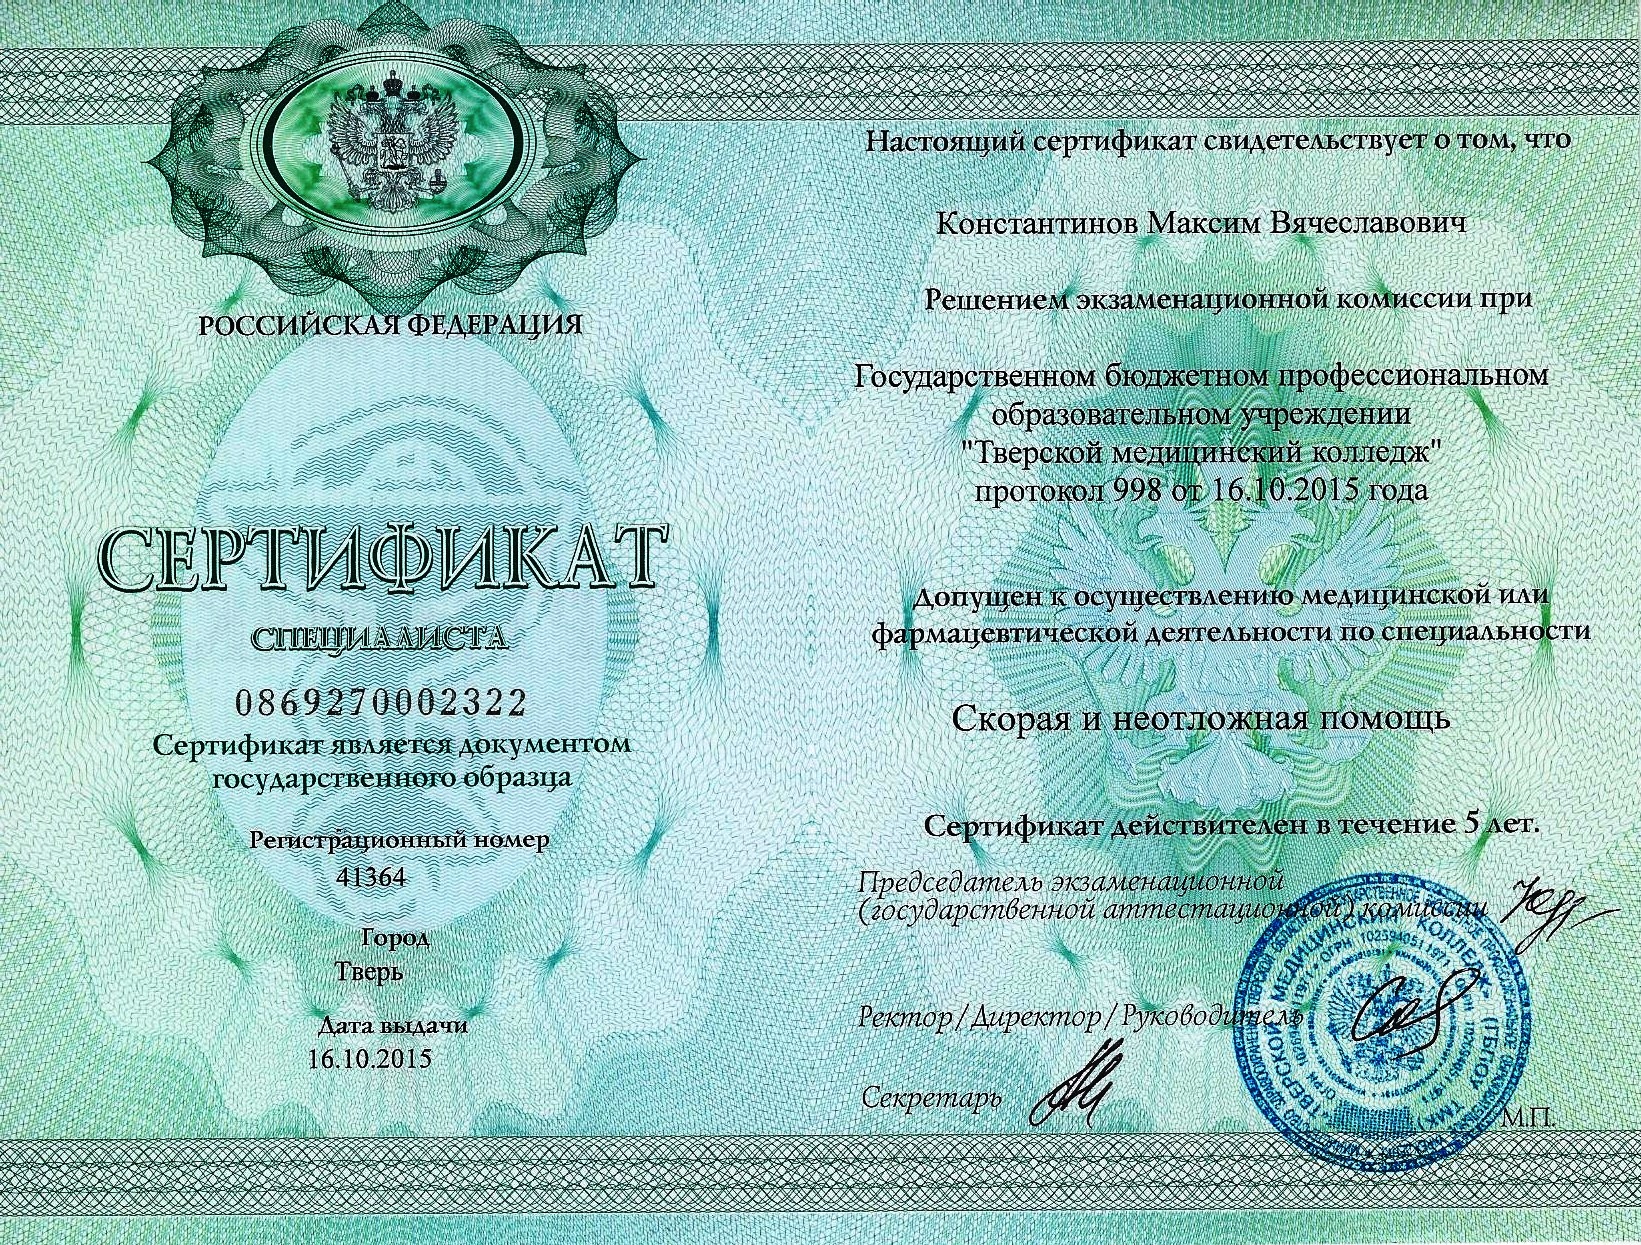 Сертификат скорой помощи